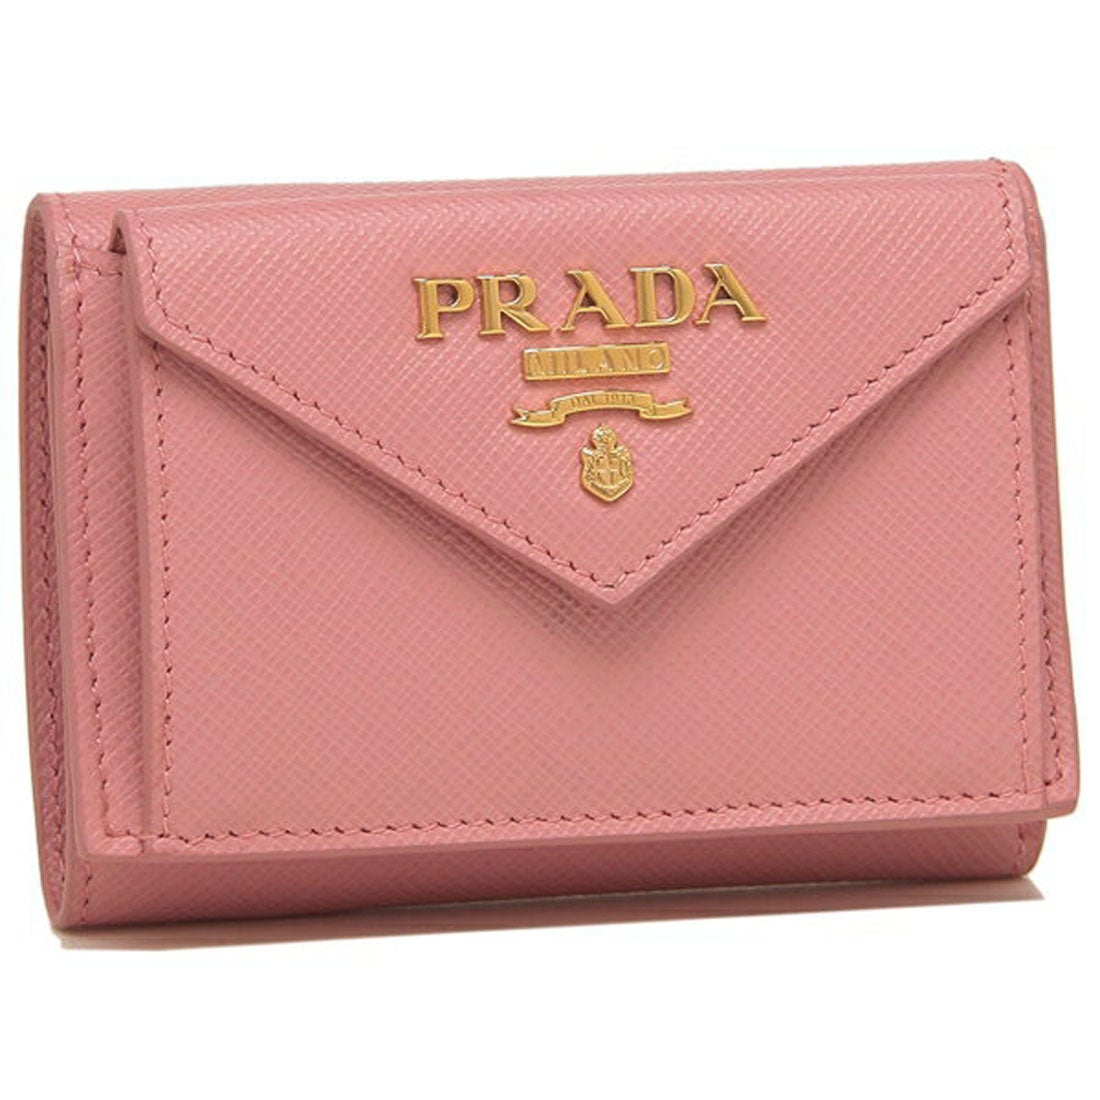 PRADA プラダ レザー 三つ折り財布 ピンク レディース ブランド